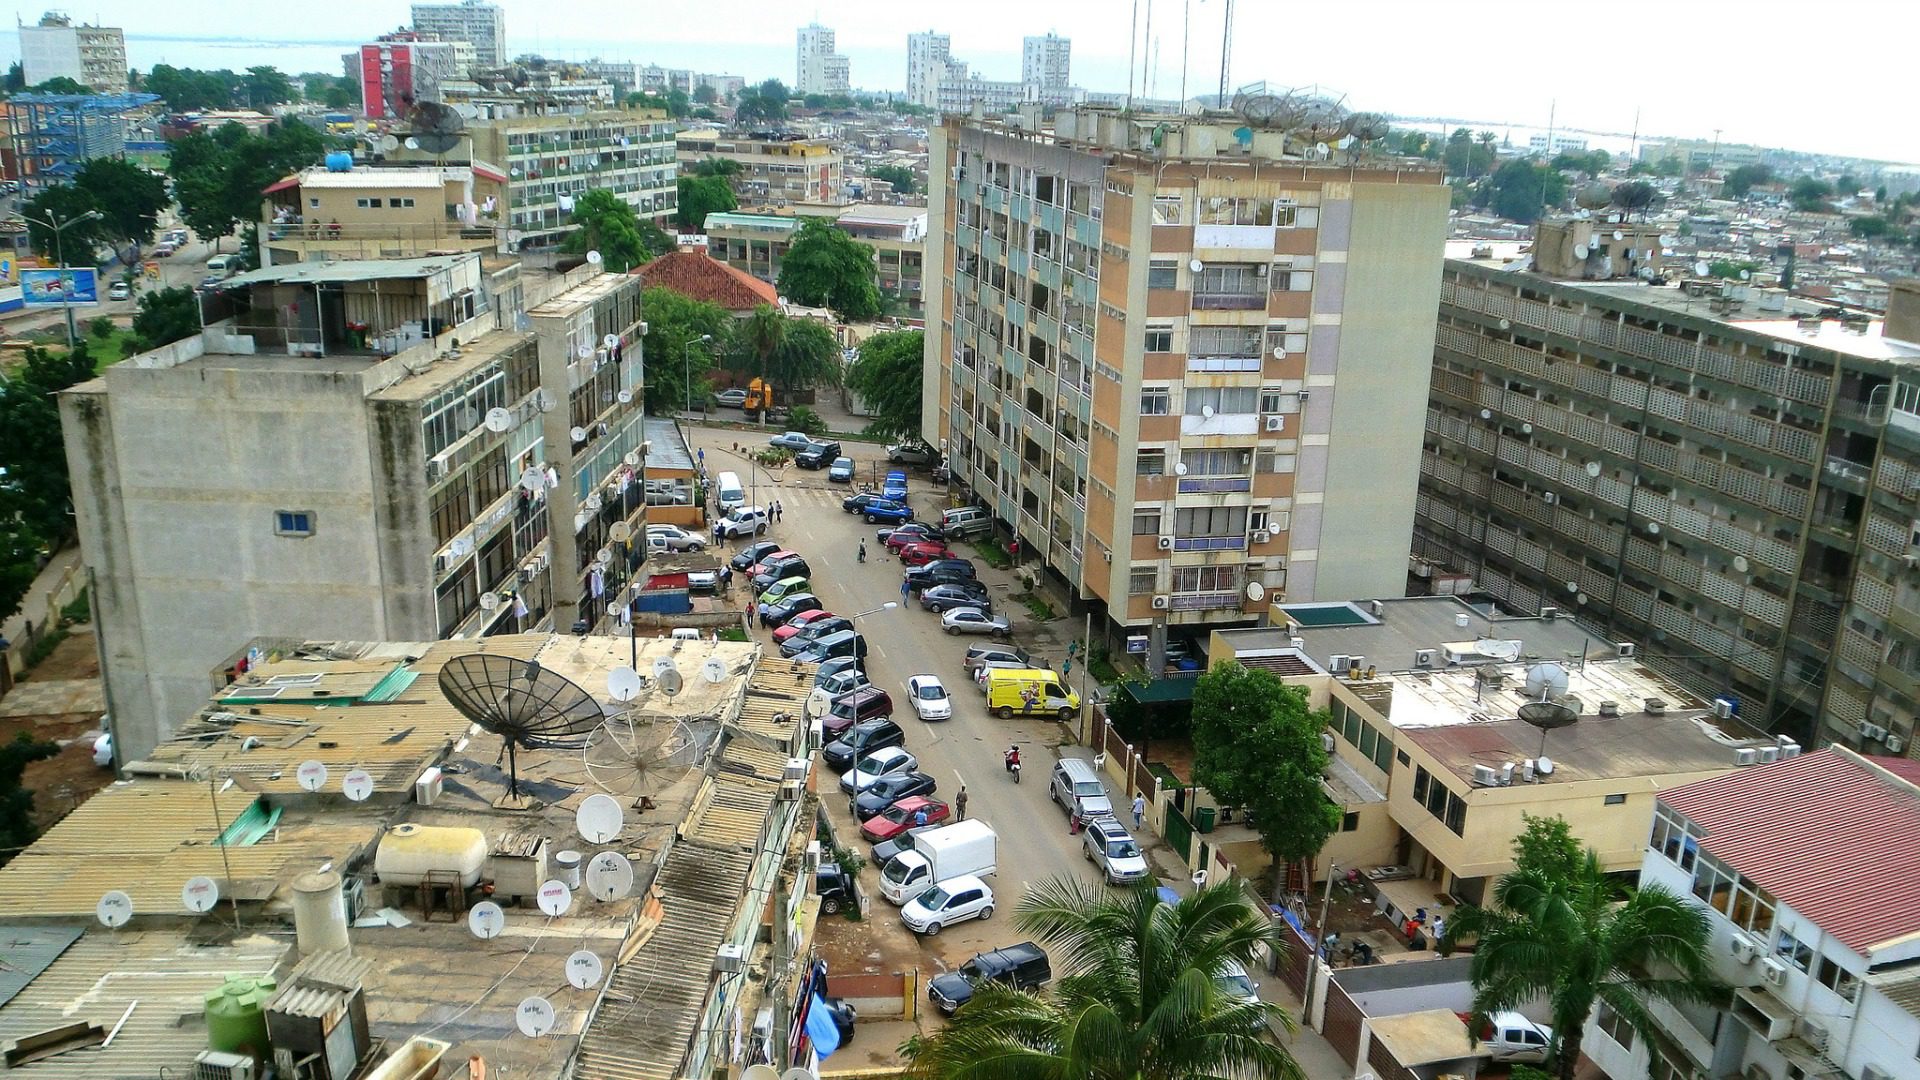 Luanda où se trouve l'université catholique de l'Angola. (photo: Flickr/maxbrotto/CC BY 2.0)